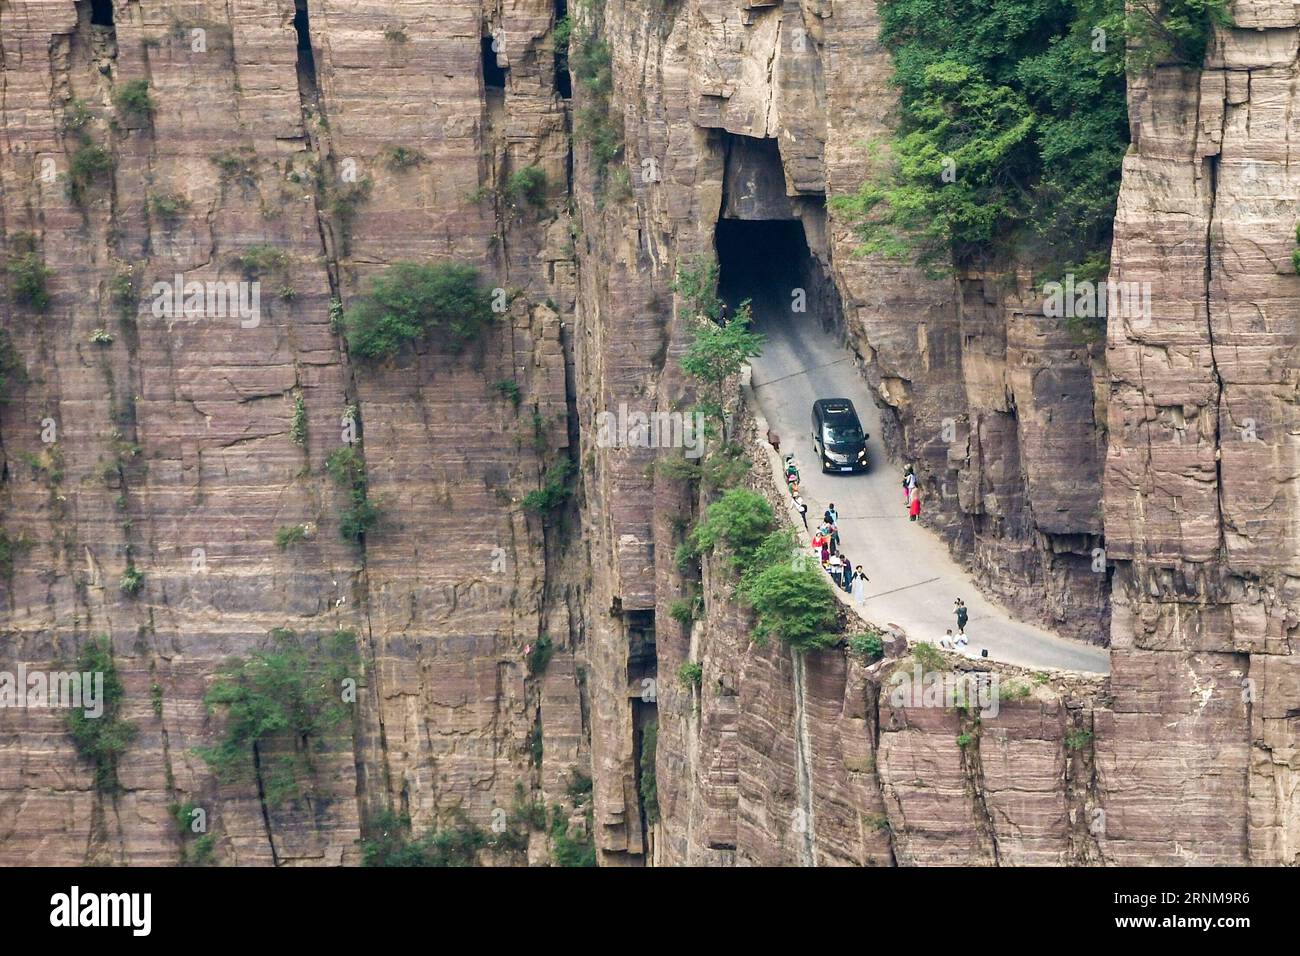 (170518) -- ZHENGZHOU, le 18 mai 2017 -- Un véhicule roule sur le couloir de la falaise dans le village de Guoliang à Huixian, province du Henan, au centre de la Chine, le 17 mai 2017. Le couloir de la falaise de Guoliang est une route de 1 250 mètres de long construite le long de la falaise. La construction de cette route miraculeuse a duré cinq ans, de 1972 à 1977, et a été construite purement à la main par les villageois du village de Guoliang. Grâce à cette route, les villageois ici rejettent la pauvreté. ) (lfj) CHINA-HENAN-GOUOLIANG VILLAGE-FALAISE ROAD (CN) ZhangxFengguo PUBLICATIONxNOTxINxCHN Zhengzhou Mai 18 2017 un véhicule roule SUR le couloir de falaise dans le village de Guoliang in Banque D'Images